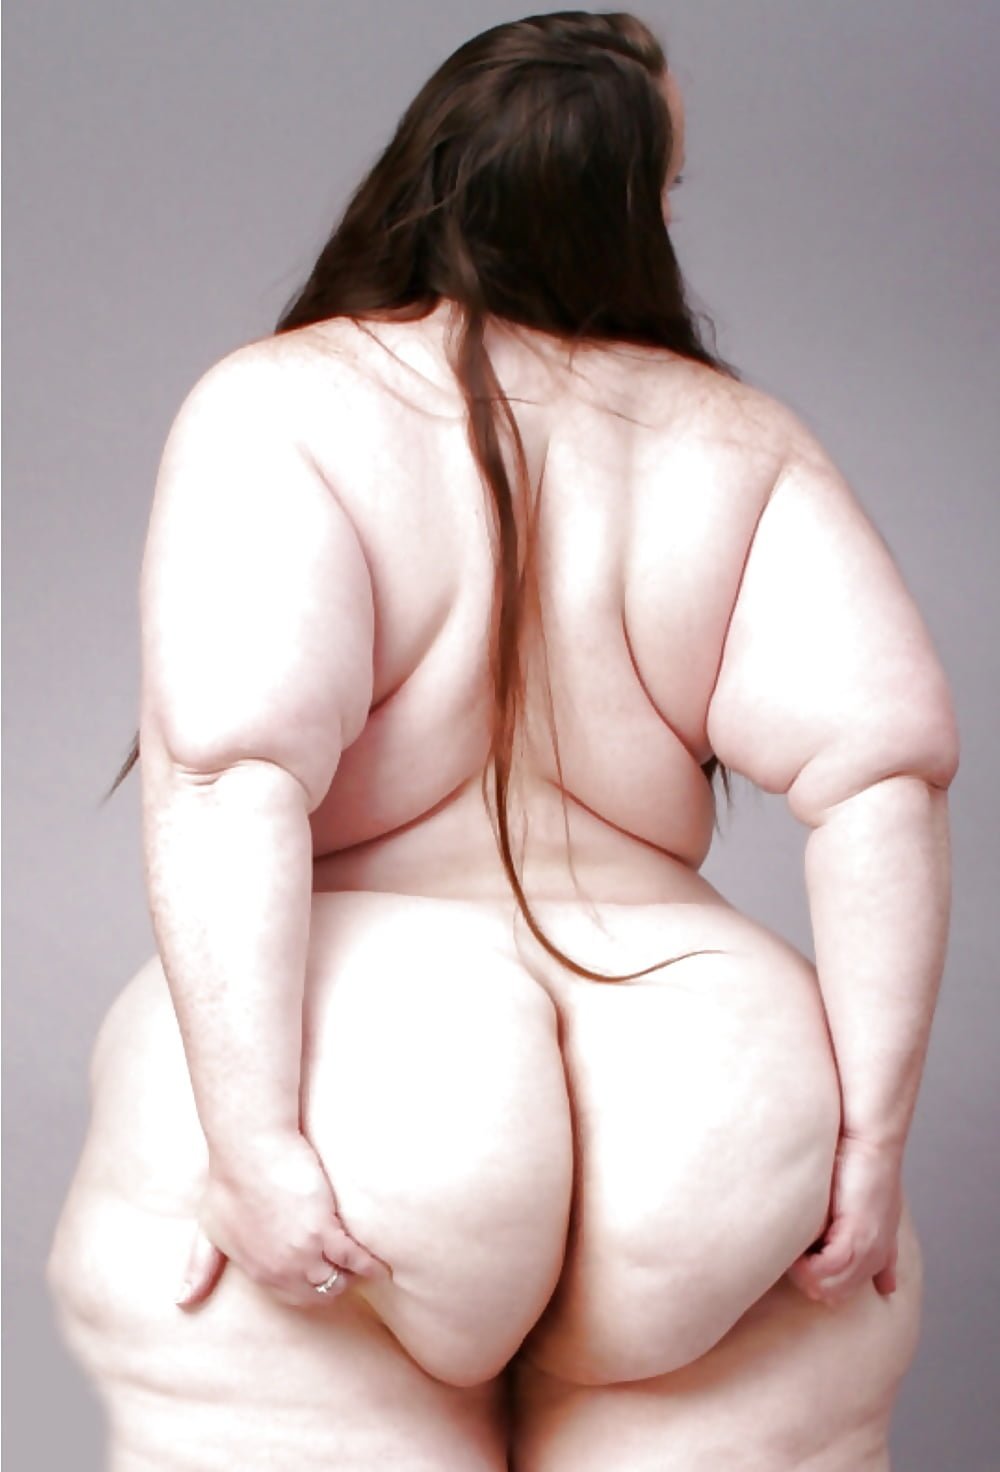 женские попы жирные и голые фото 114